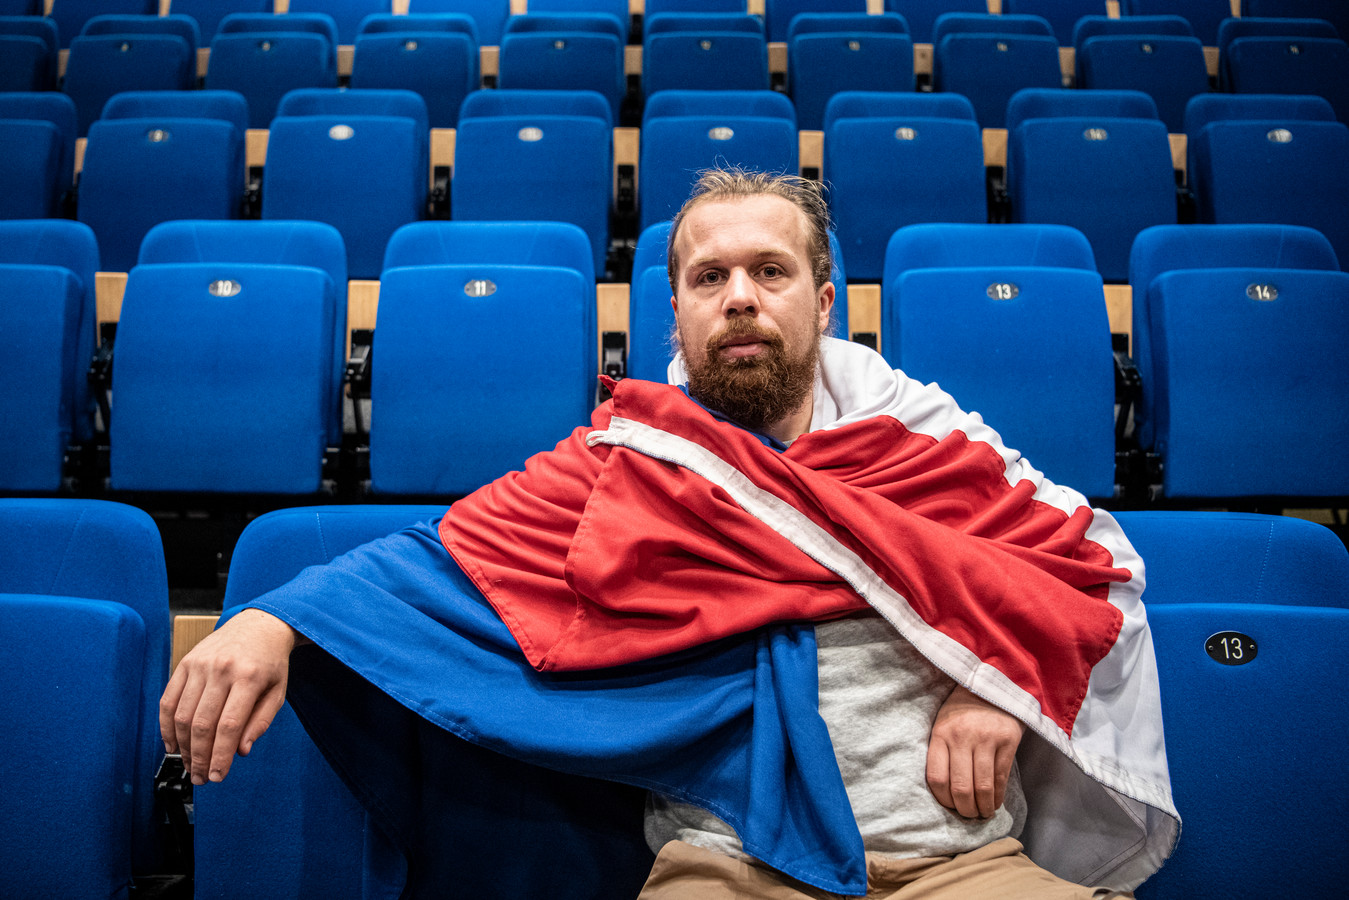 Simon Versteeg in ’t Mozaïek, gehuld in de Nederlandse vlag, die als rekwisiet een belangrijke rol speelt in de voorstelling ‘De situatie in de kampen’.